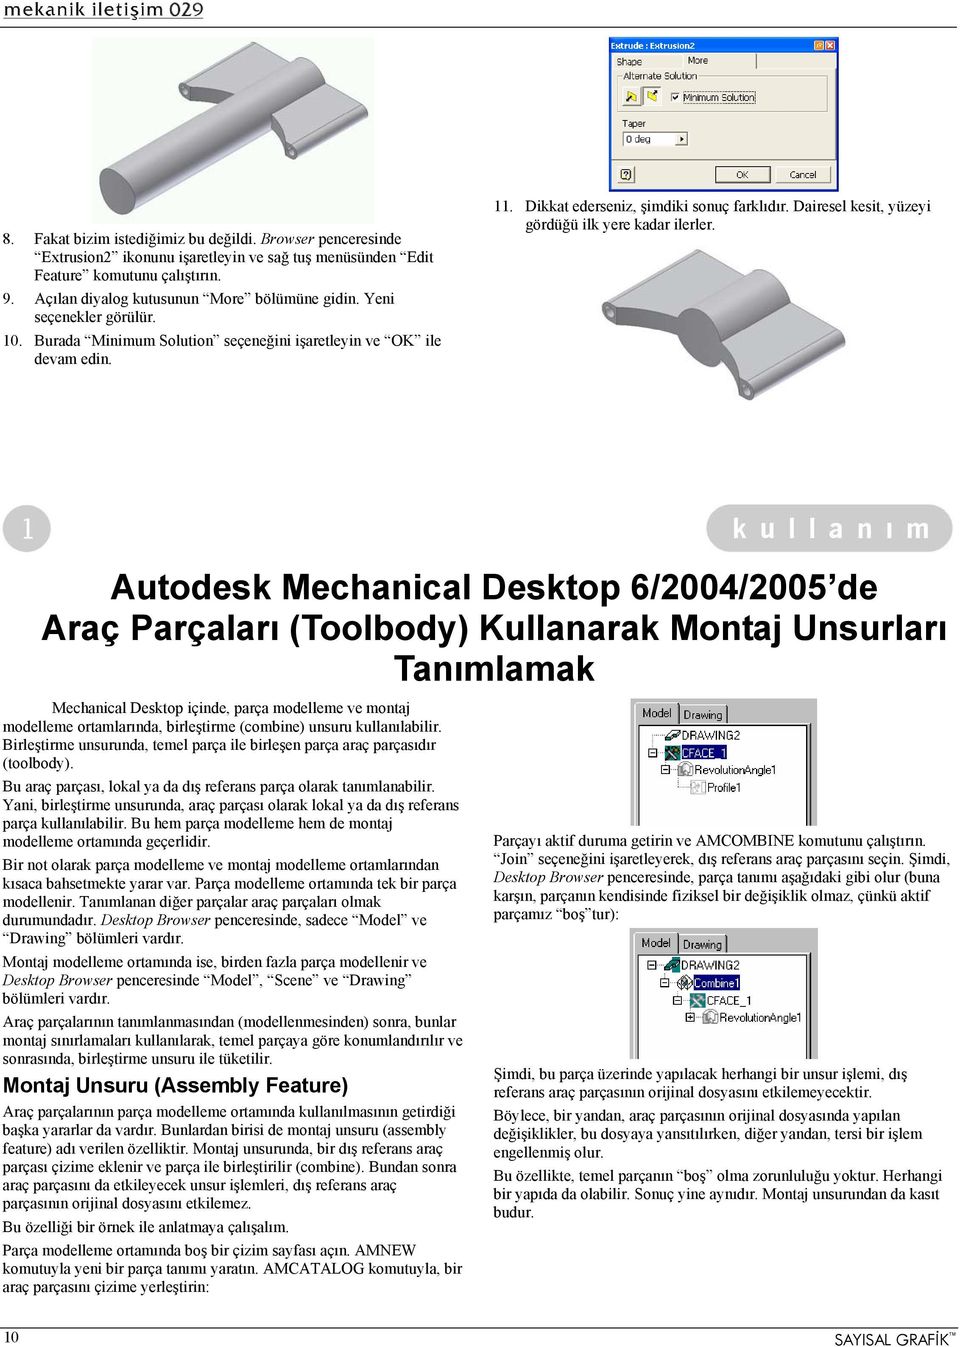 Autodesk Mechanical Desktop 6/2004/2005 de Araç Parçaları (Toolbody) Kullanarak Montaj Unsurları Tanımlamak Mechanical Desktop içinde, parça modelleme ve montaj modelleme ortamlarında, birleştirme